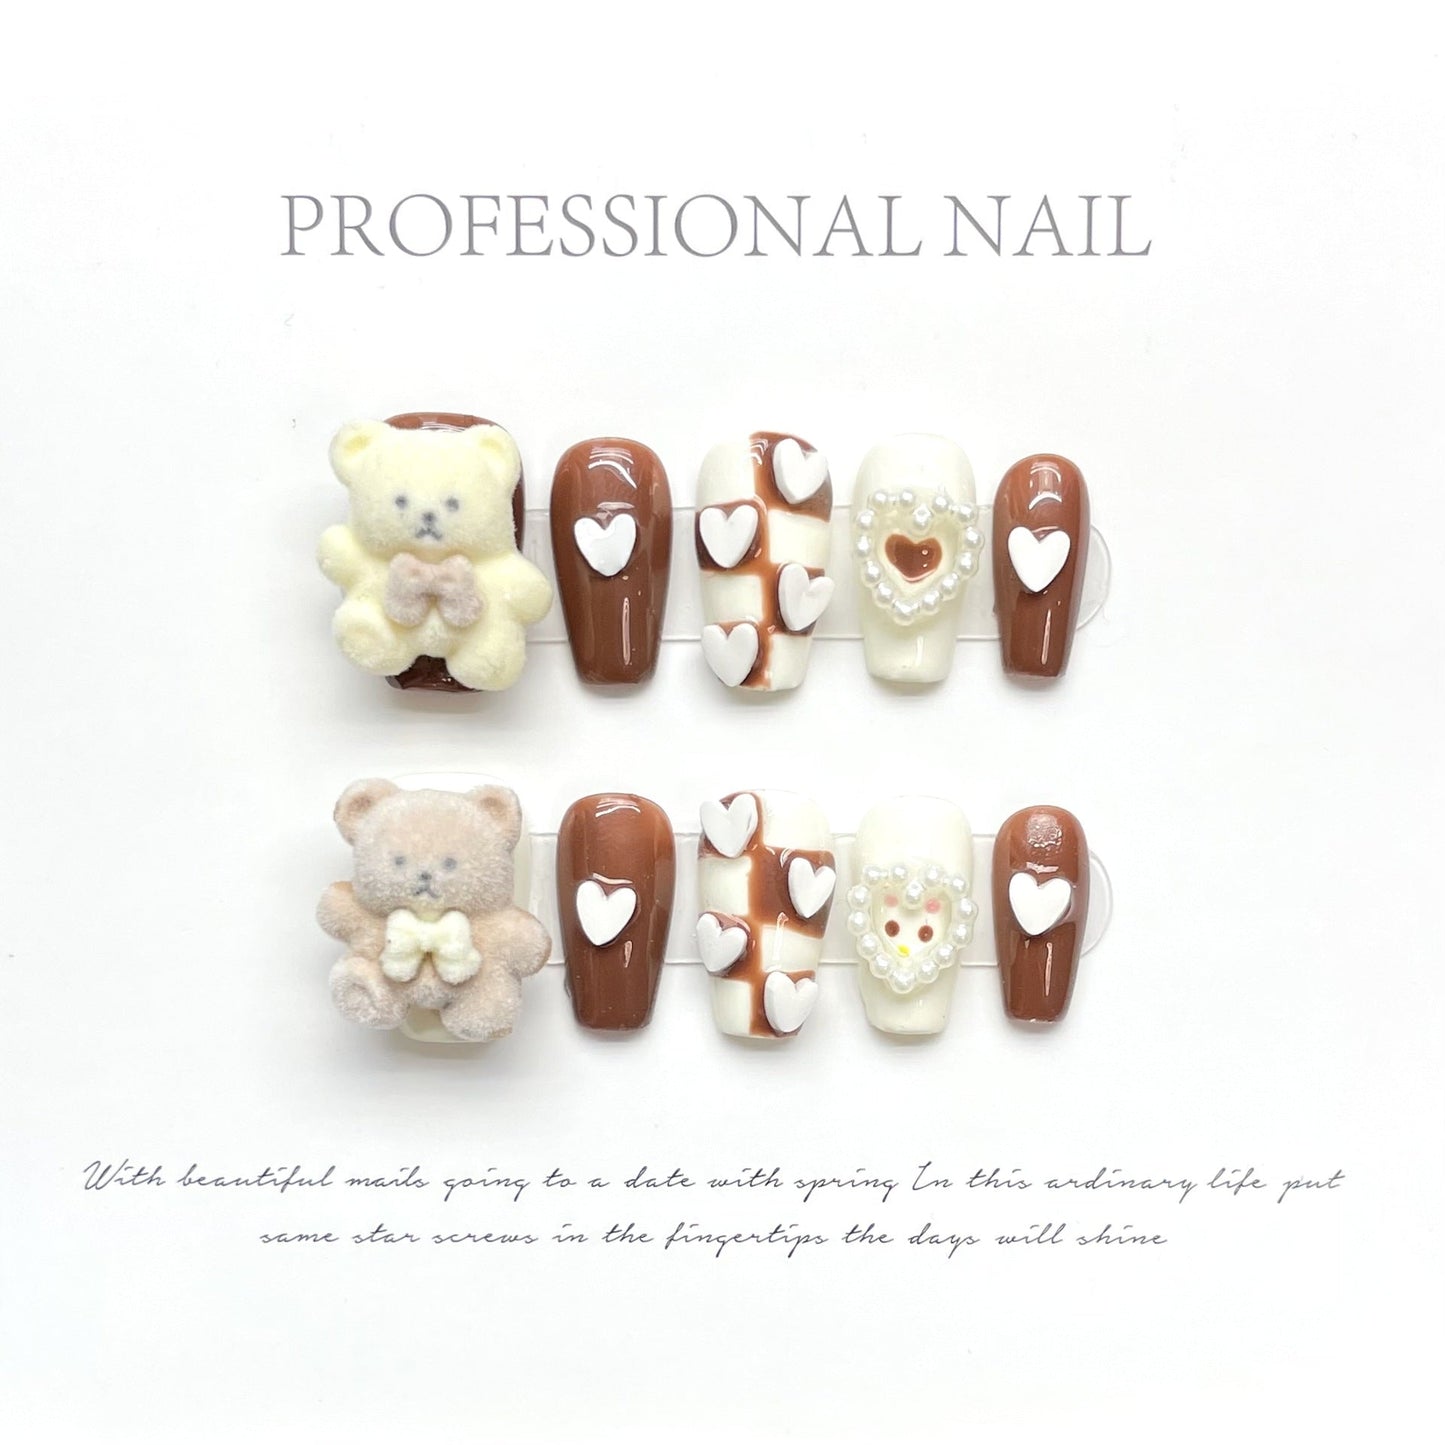 1290 Maillard Bear style press on nails 100% handmade false nails brown